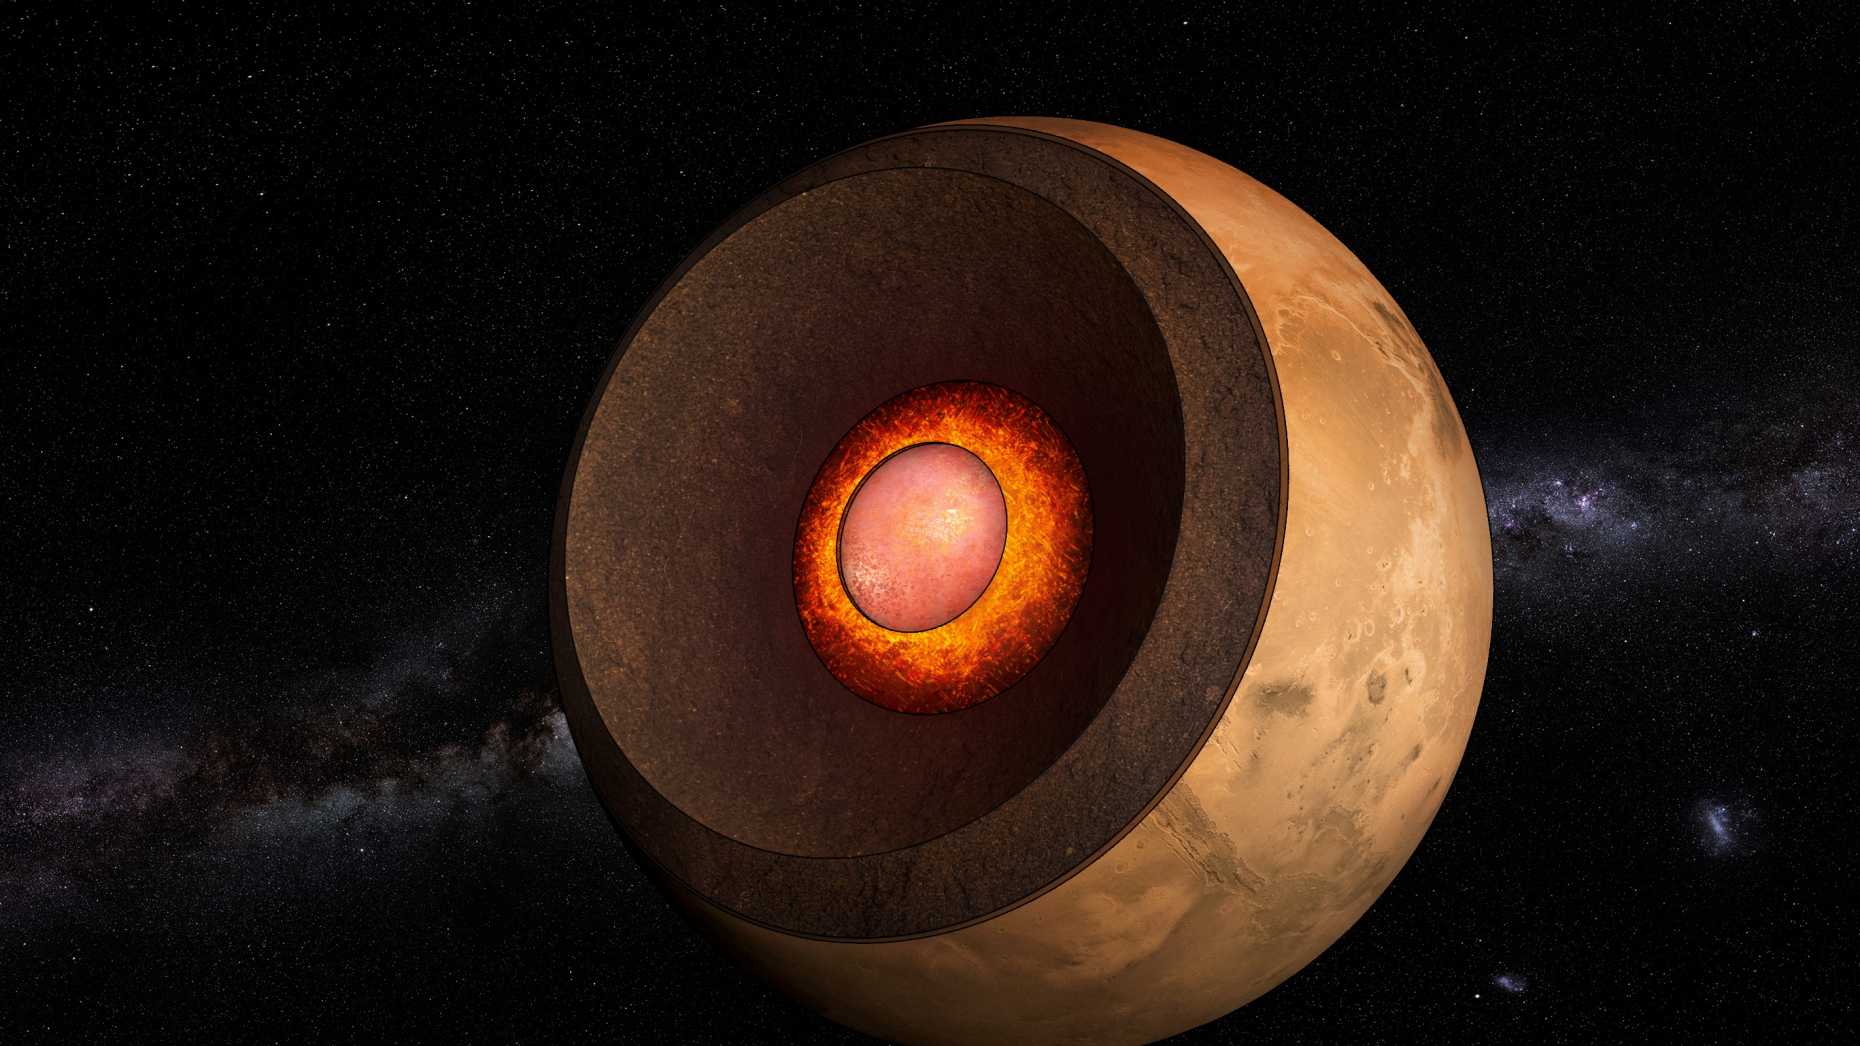 Illustration, Mars entzweigeschnitte, so dass der Kern in der Mitte erkennbar ist